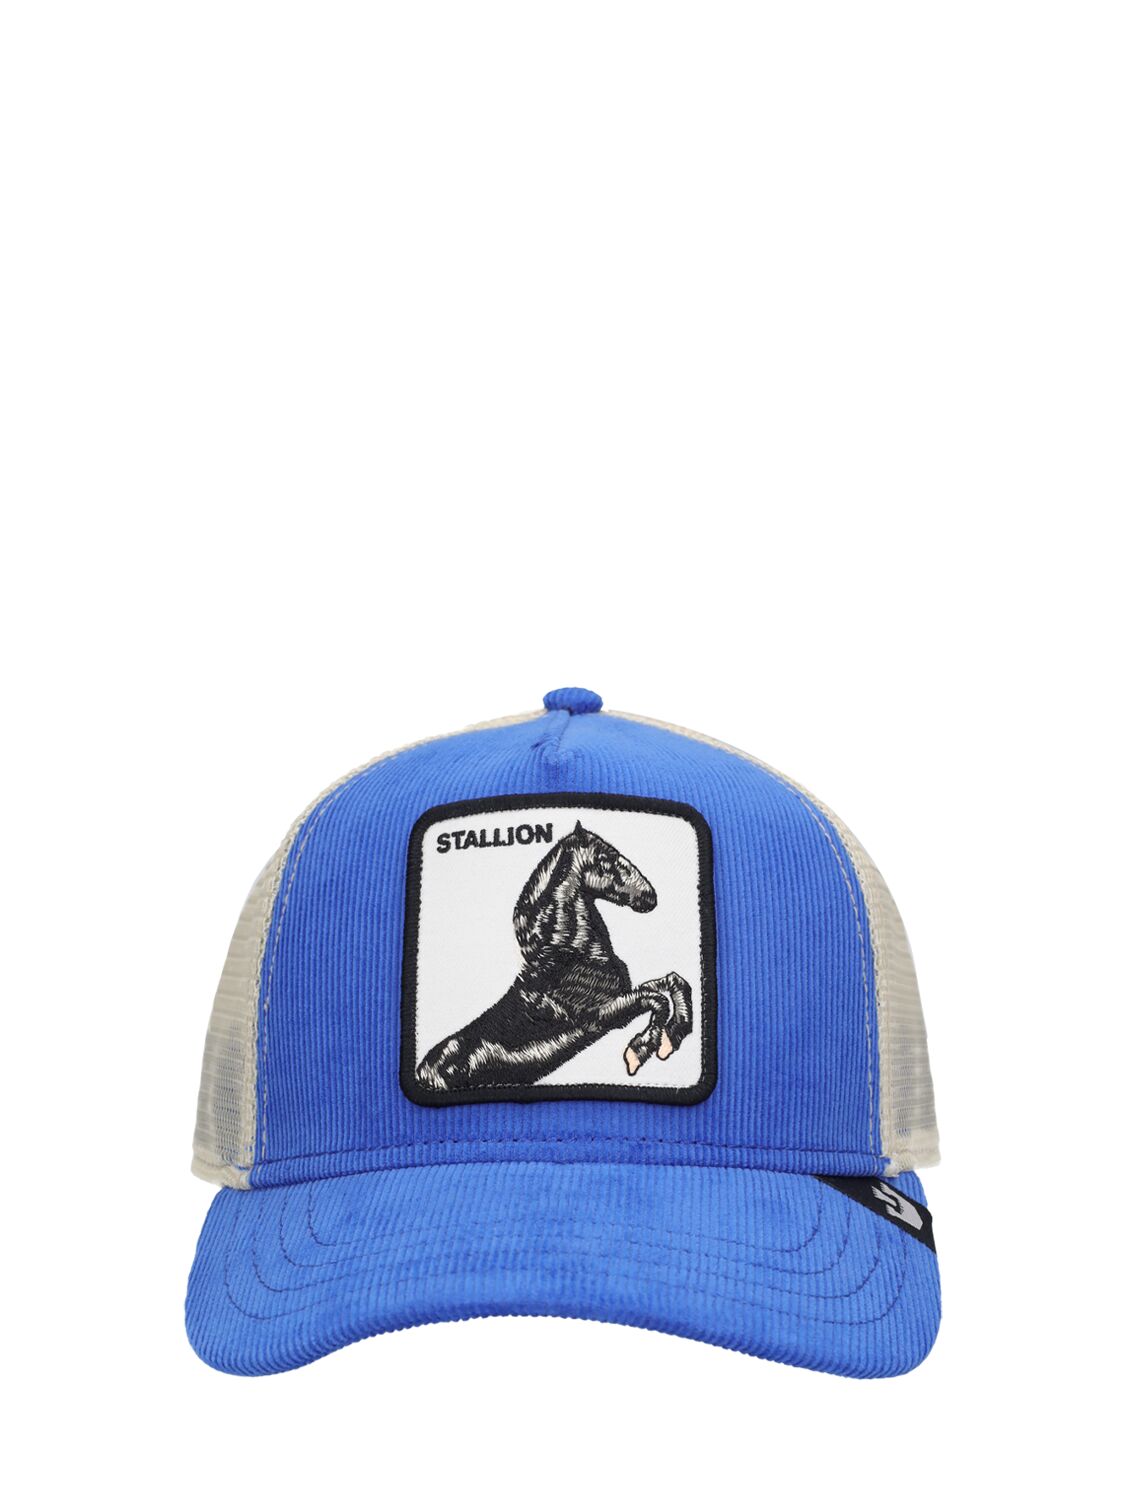 Goorin Bros Sly Stallione Trucker Hat In Blue